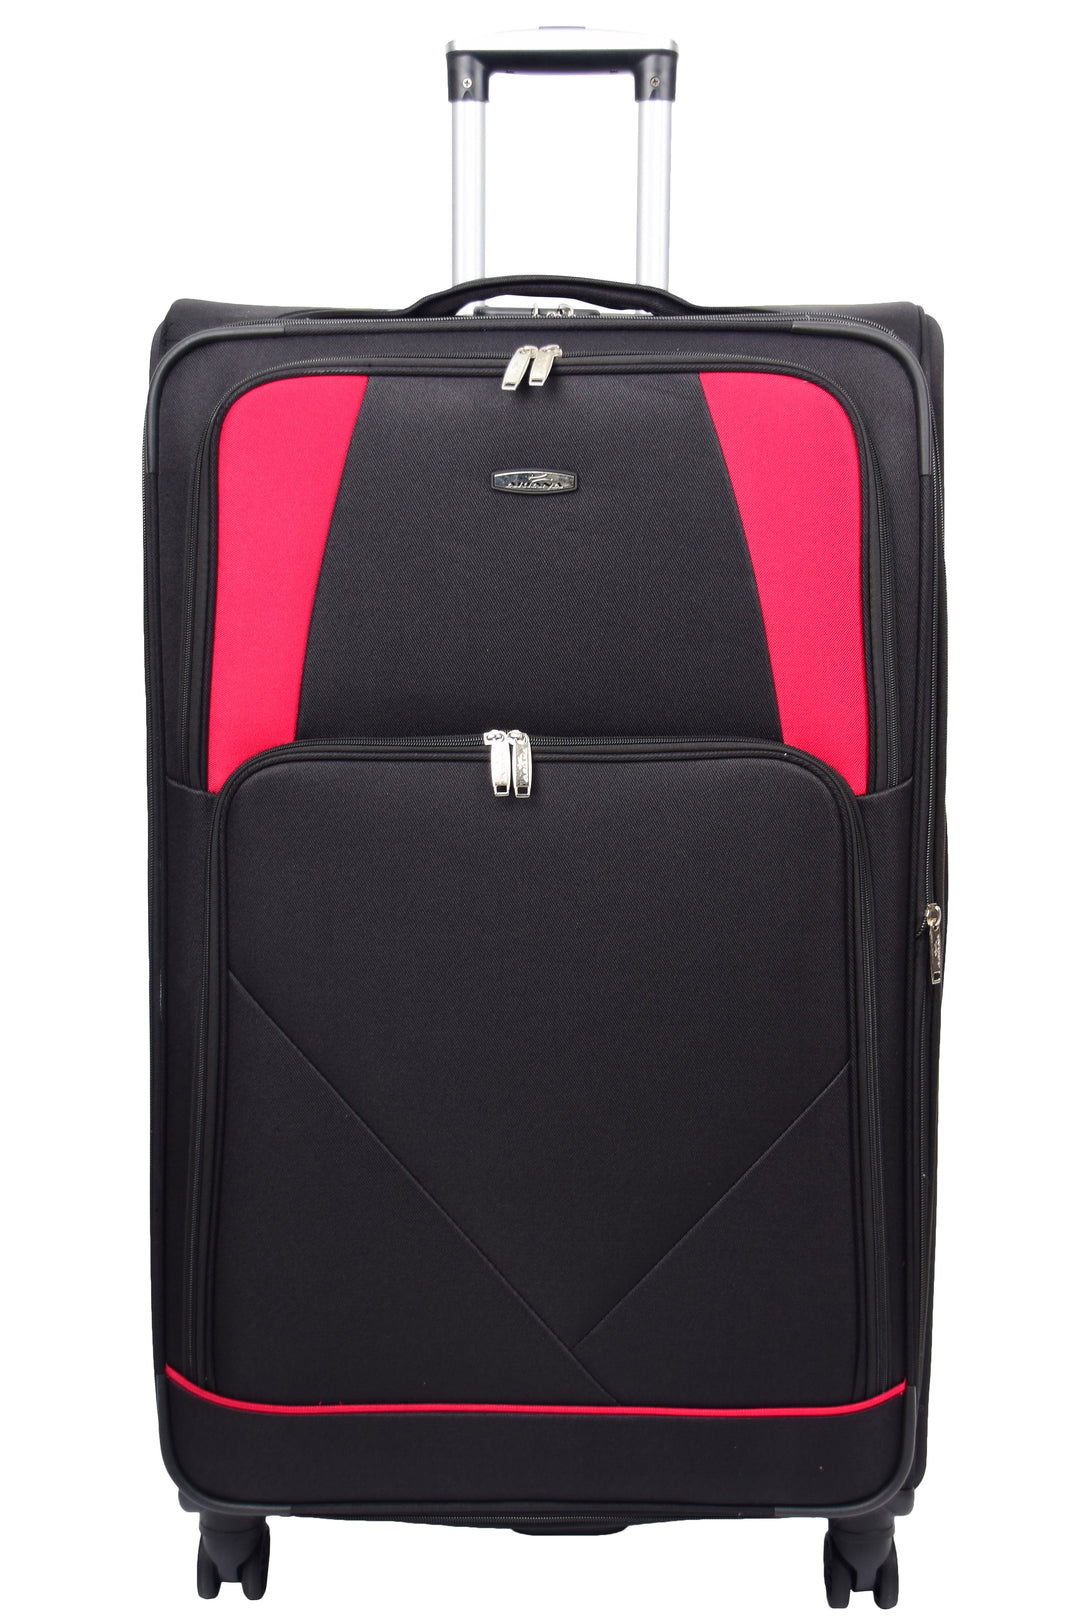 Guardian Lightweight Suitcase 2